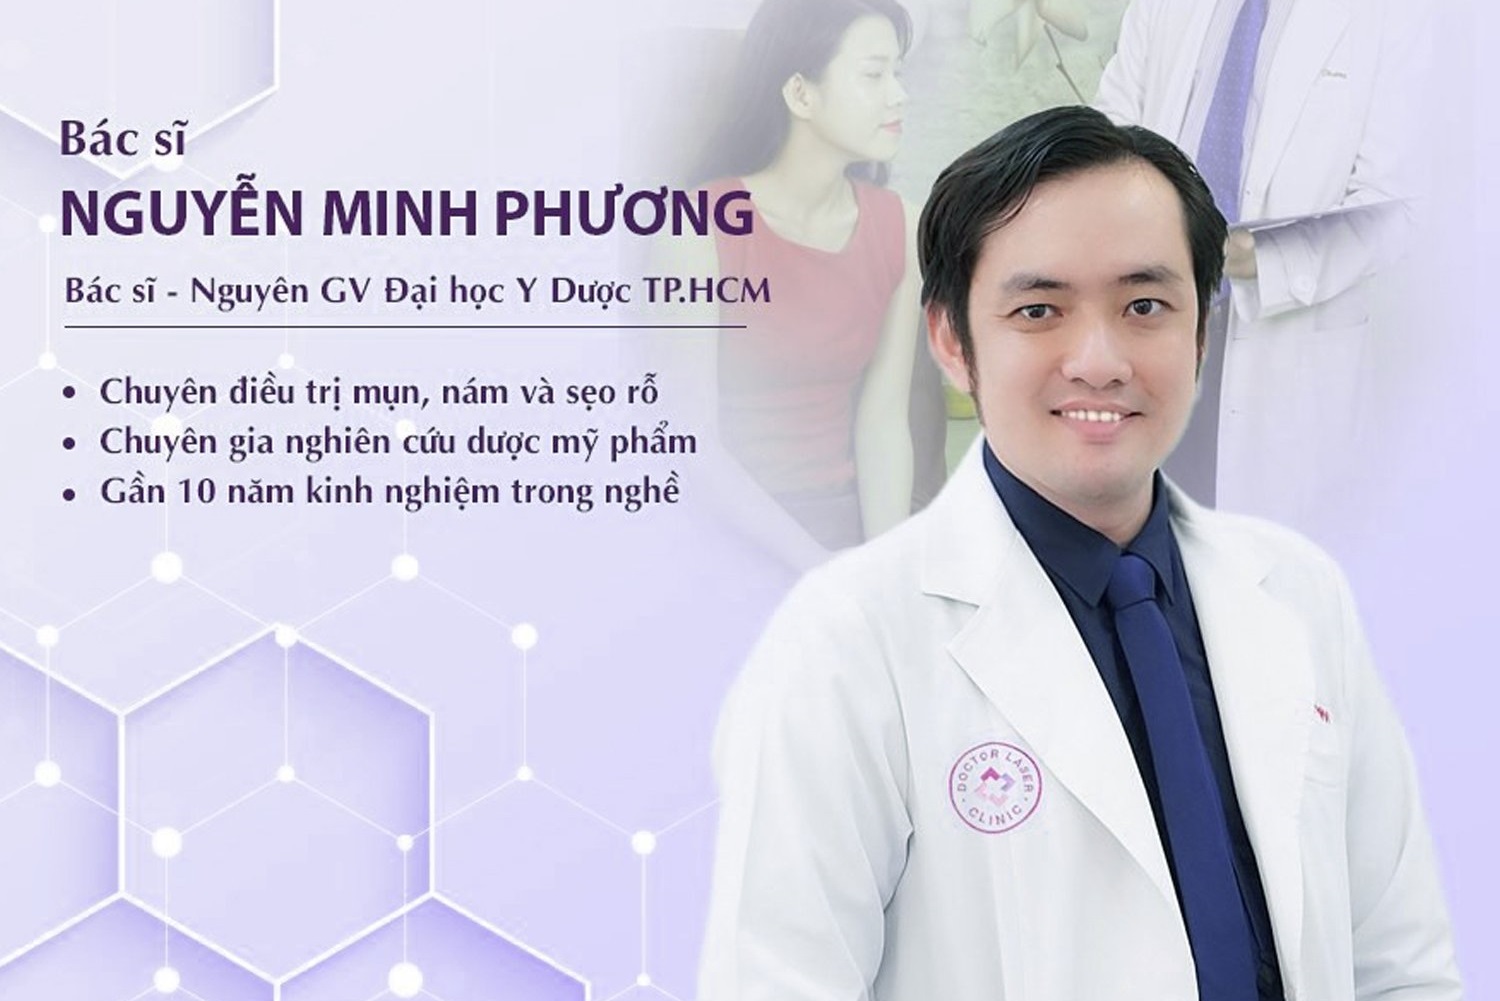 Bác sĩ Da liễu Nguyễn Minh Phương